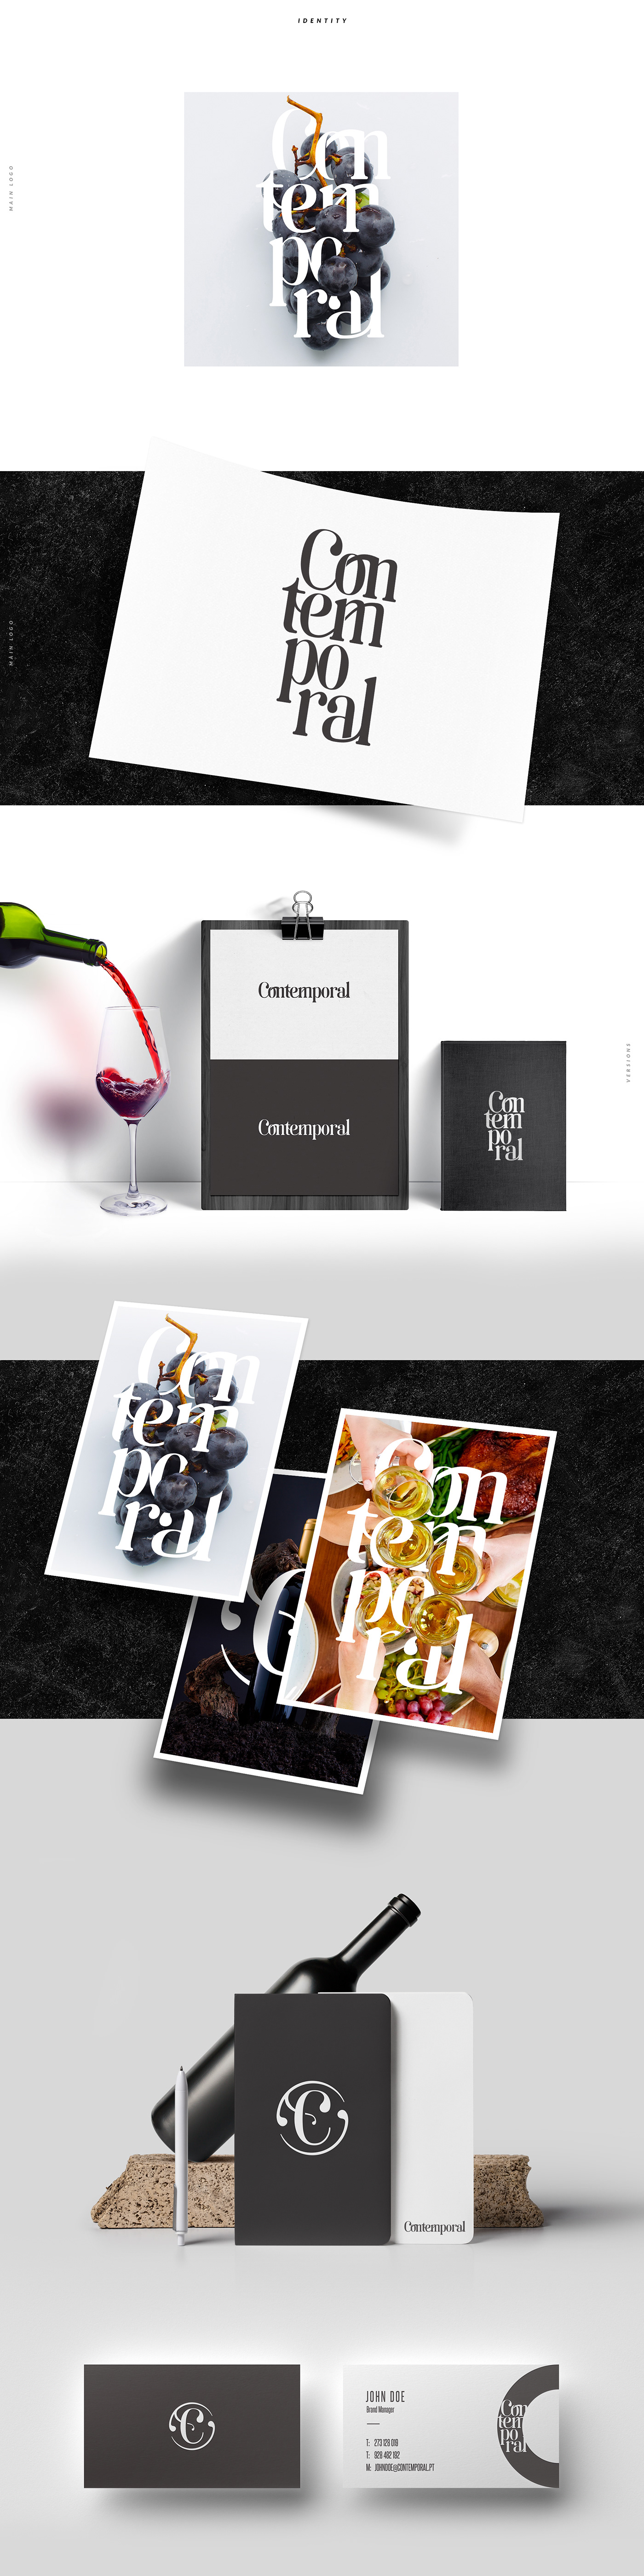 wine branding  Rebrand Label package